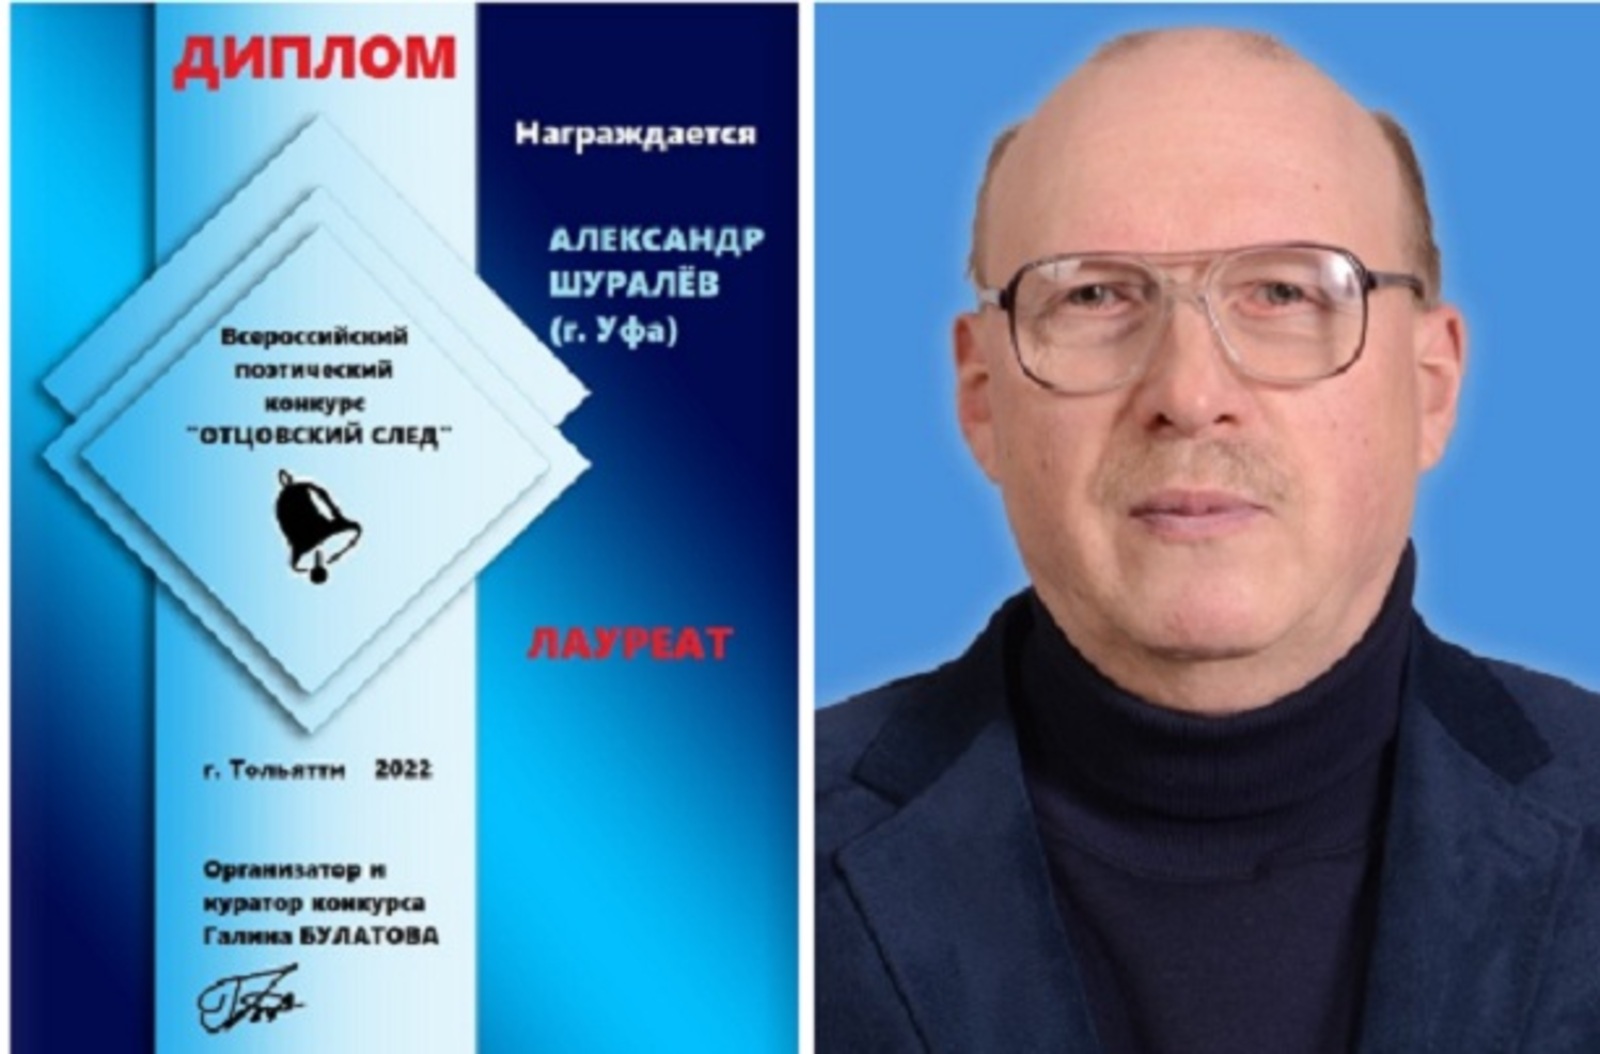 Уфимский профессор стал лауреатом всероссийского конкурса «Отцовский след»